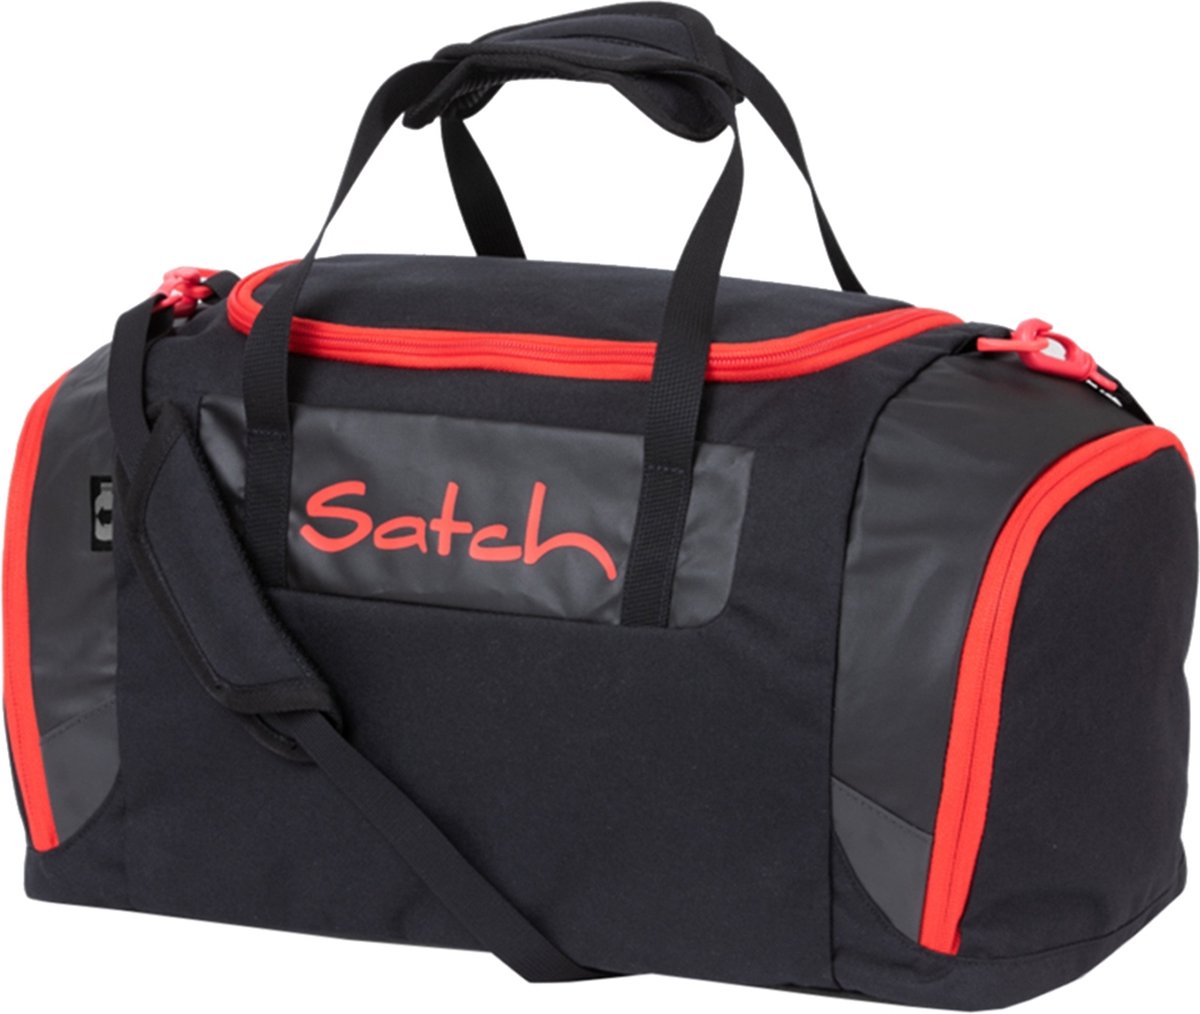 Satch Duffle Bag fire phantom